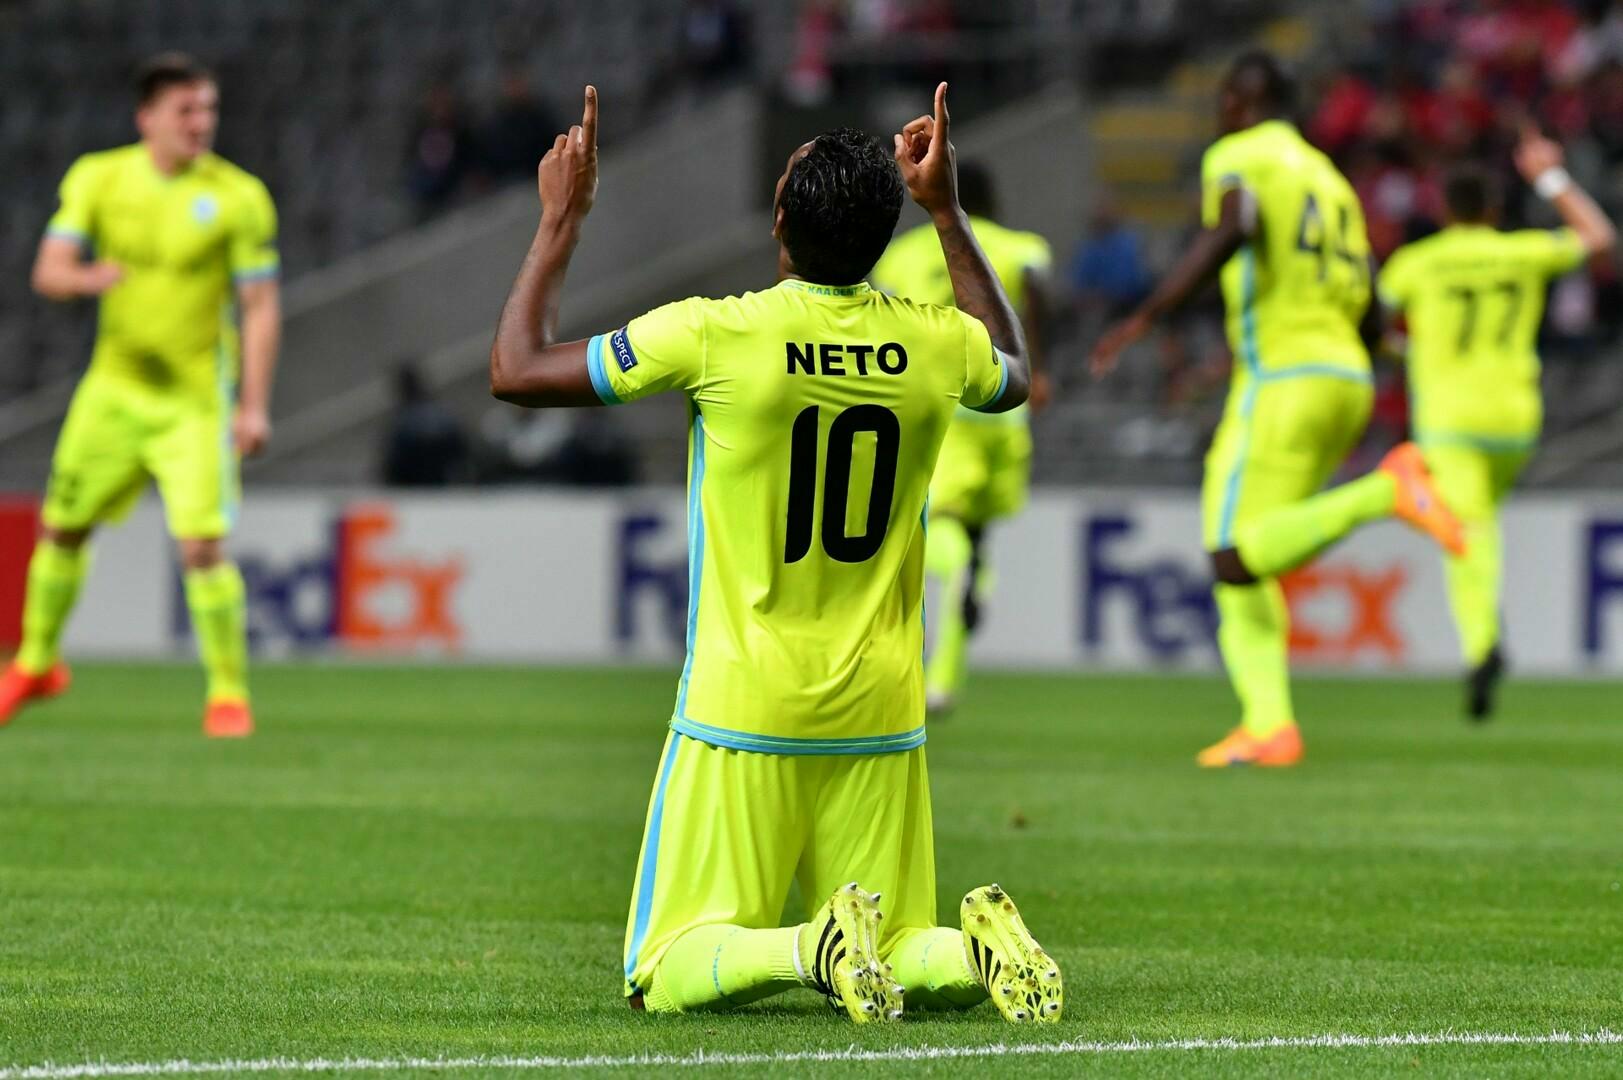 Renato Neto verlengt contract tot 2019